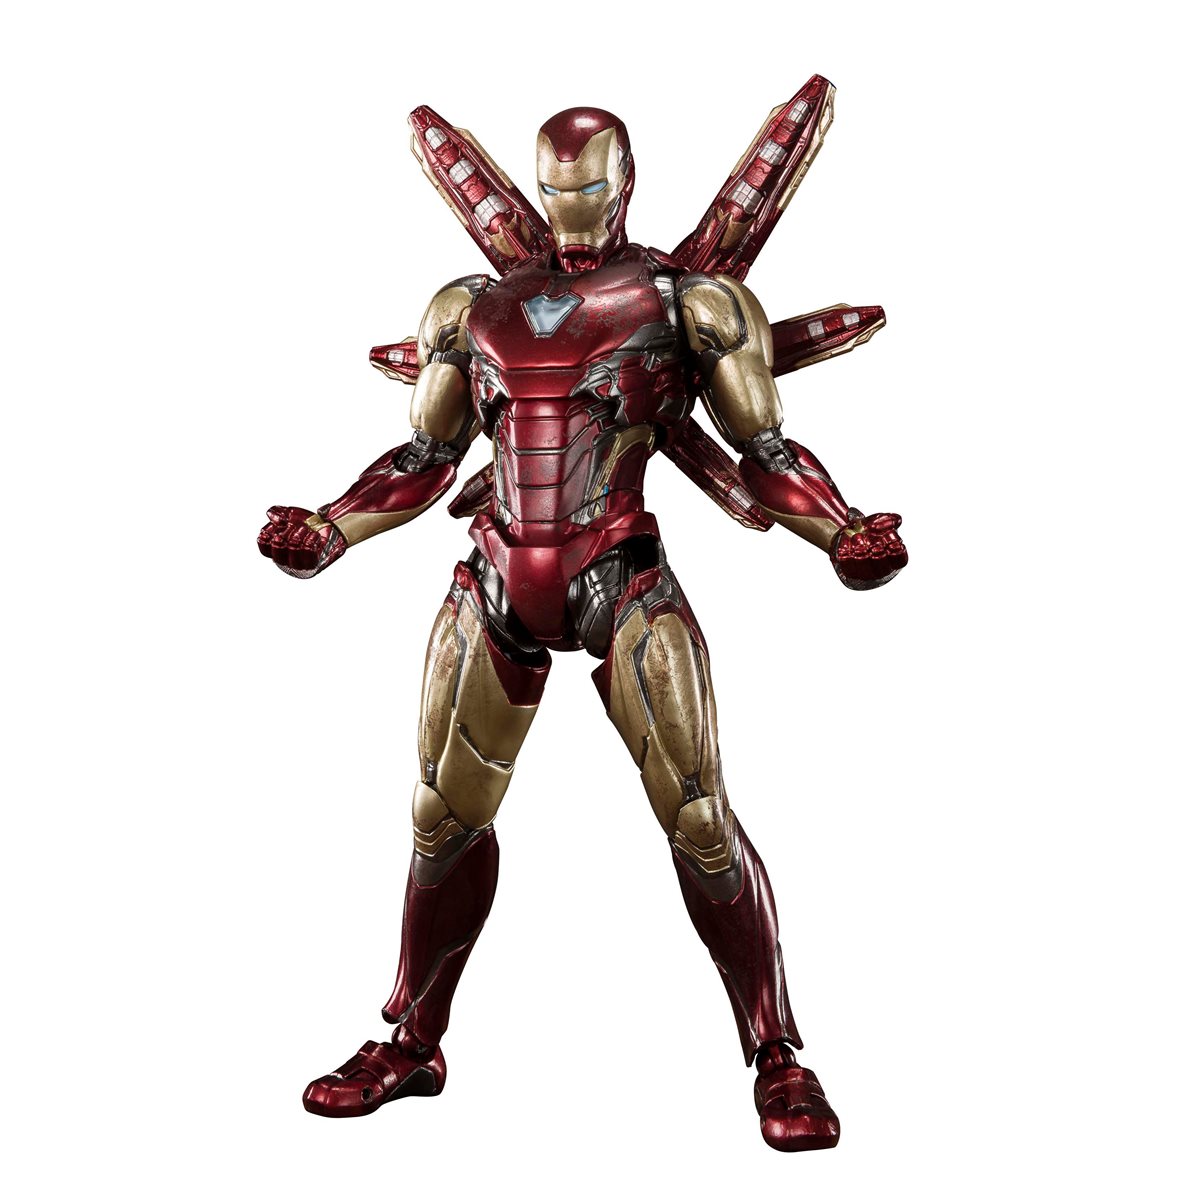 Avengers Endgame Iron Man Mark 20 Final Battle Edition S.H.Figuarts Action  Figure